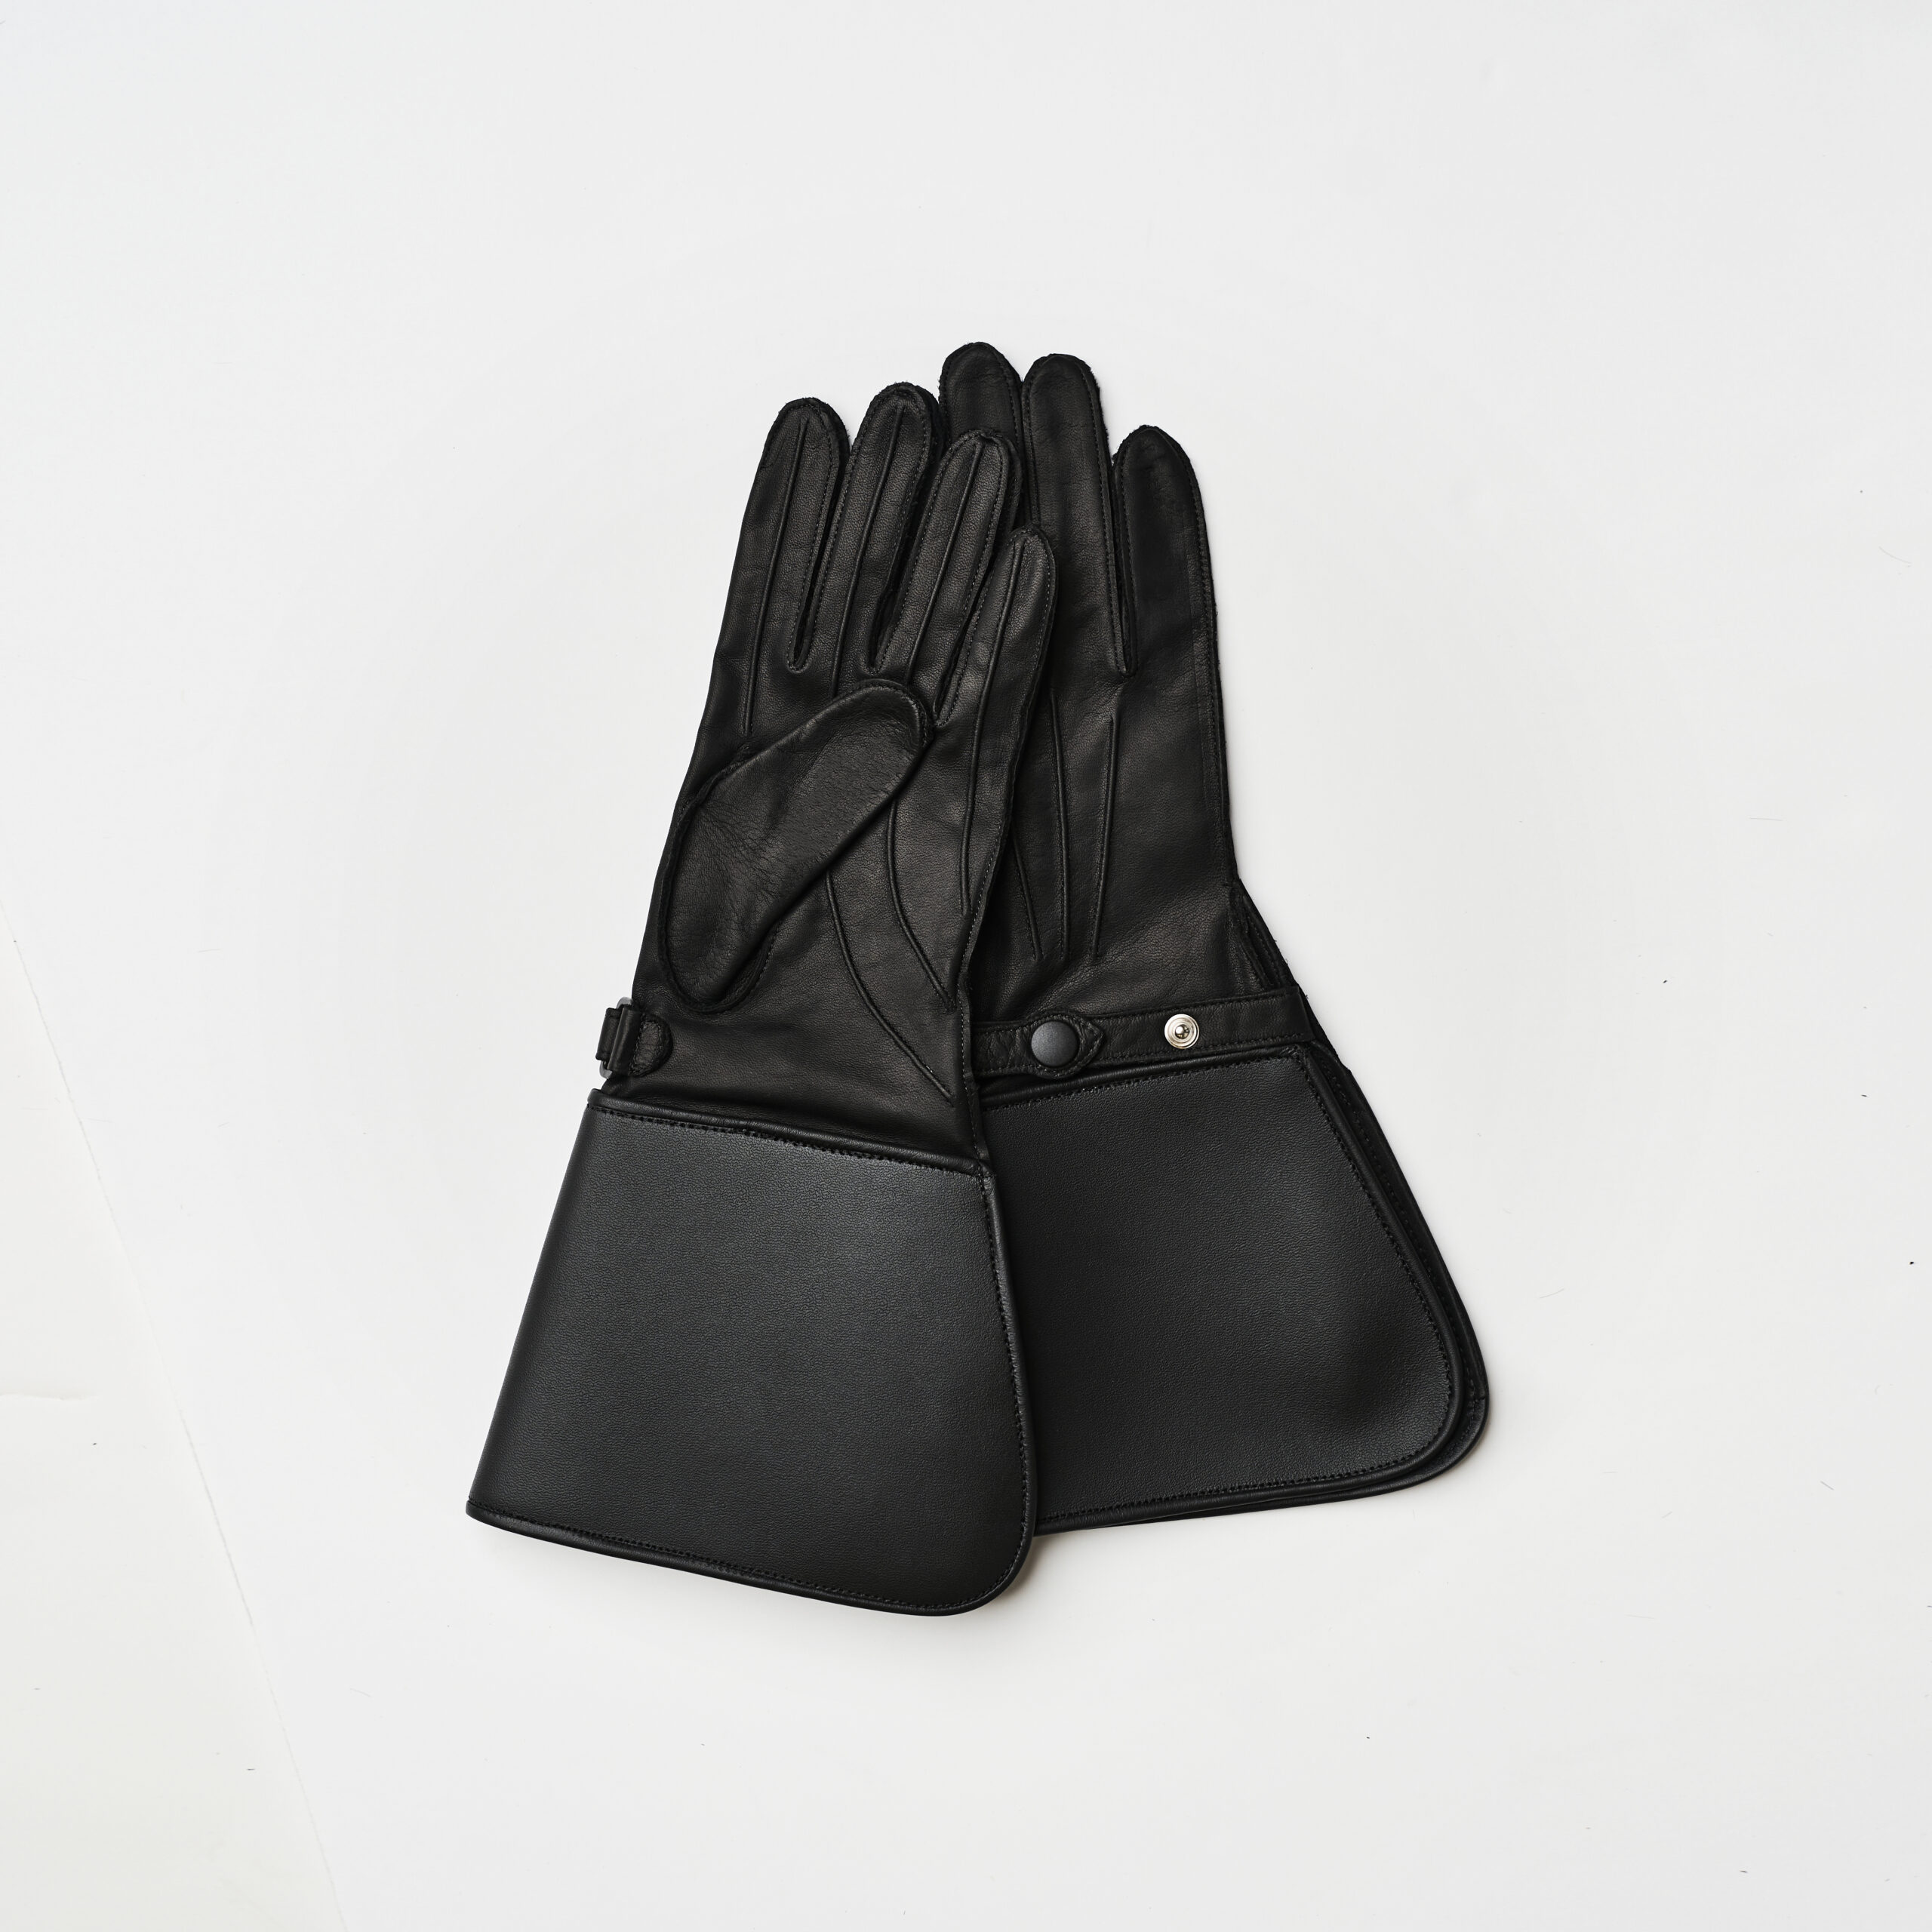 DIP - Raber Glove Manufacturing Co. Ltd.